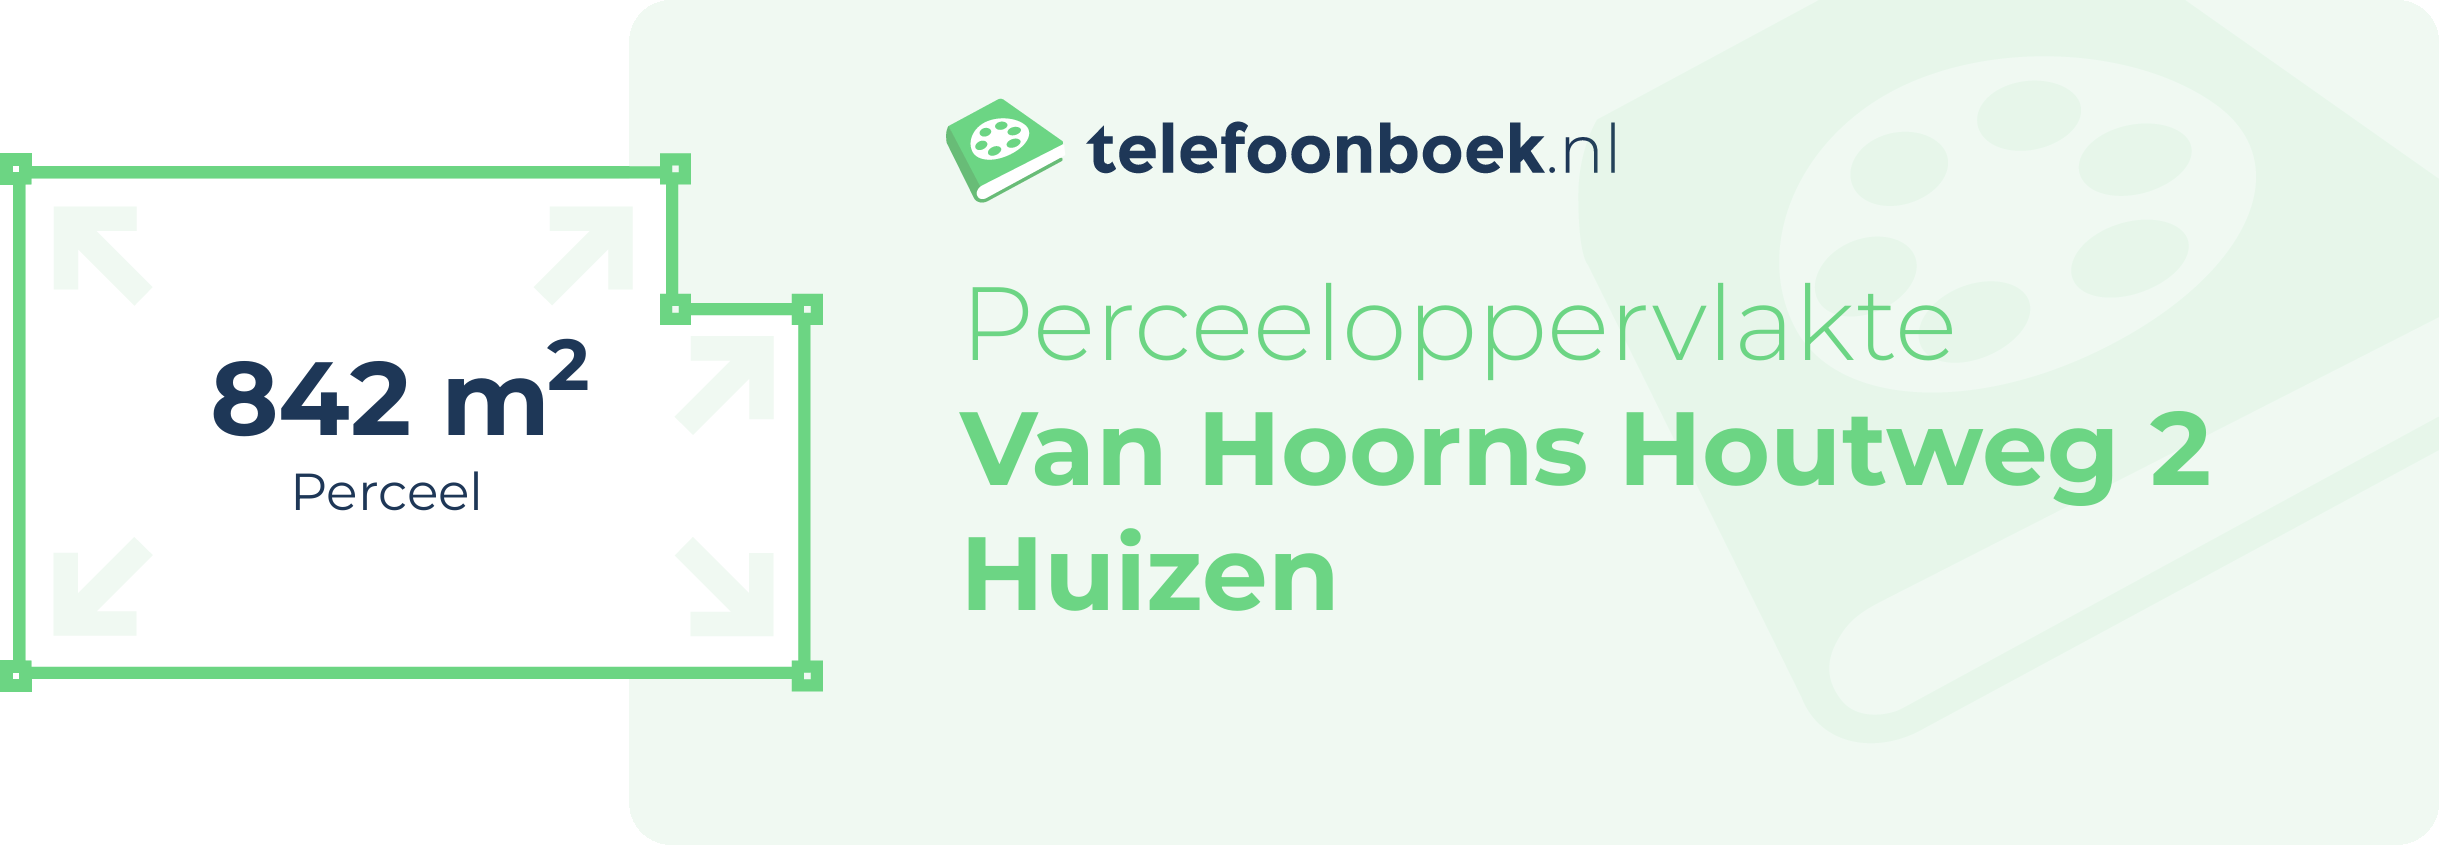 Perceeloppervlakte Van Hoorns Houtweg 2 Huizen